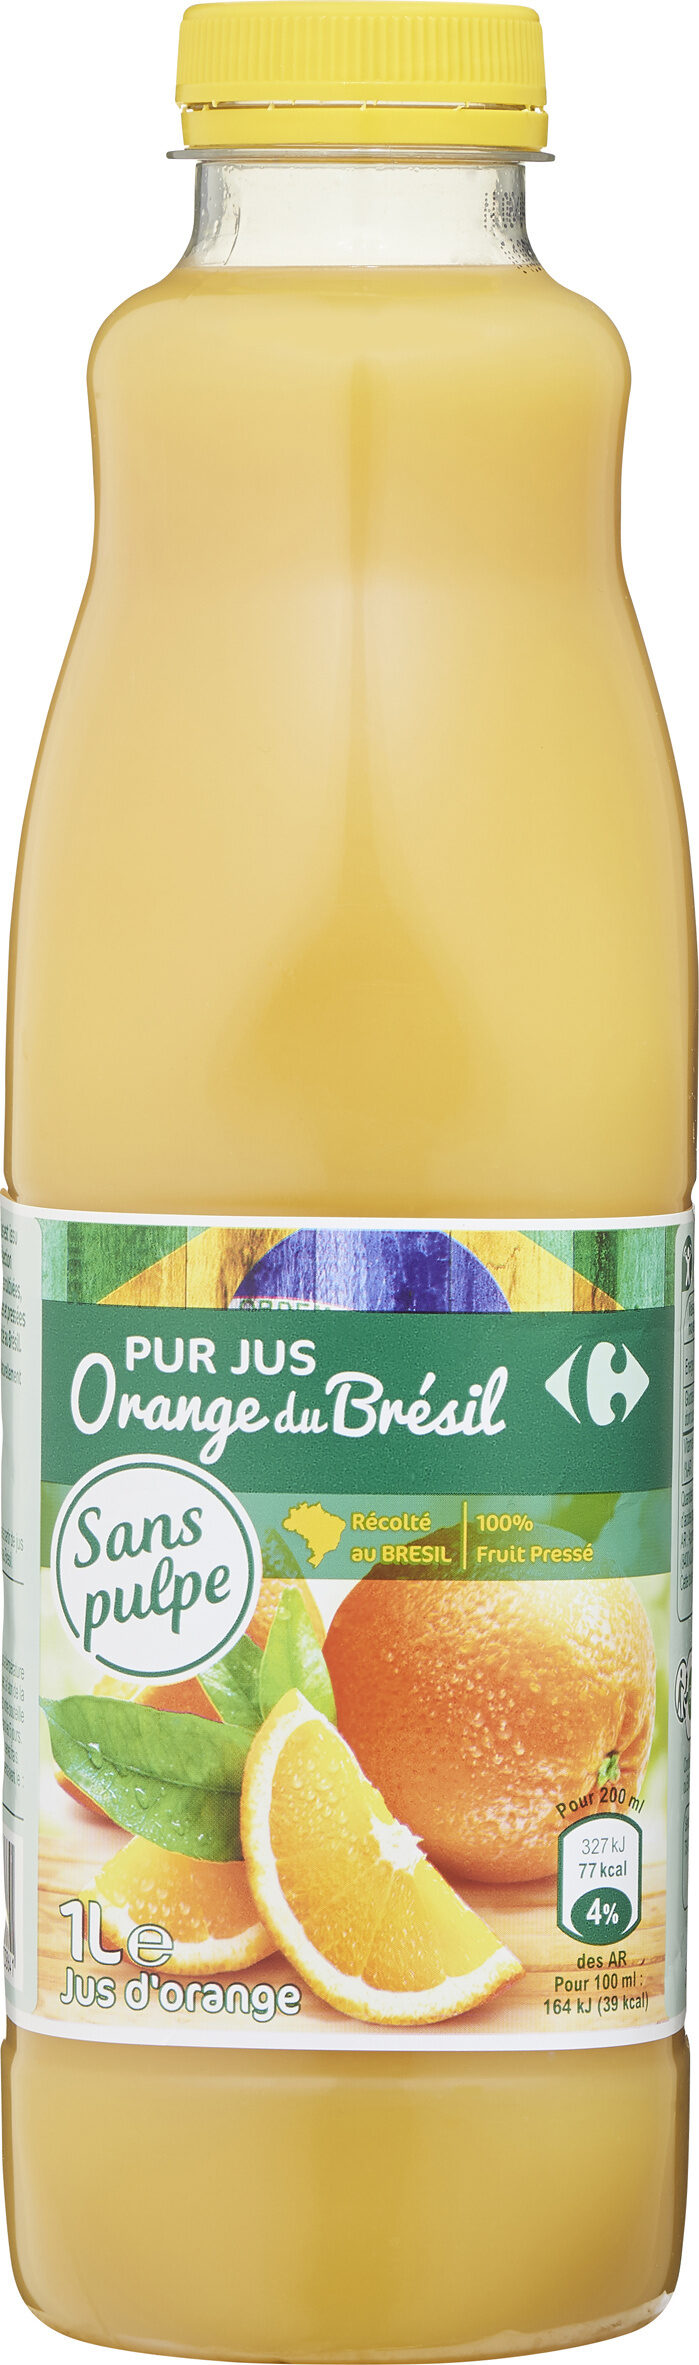 100% pur jus orange du brésil sans pulpe - Producto - fr